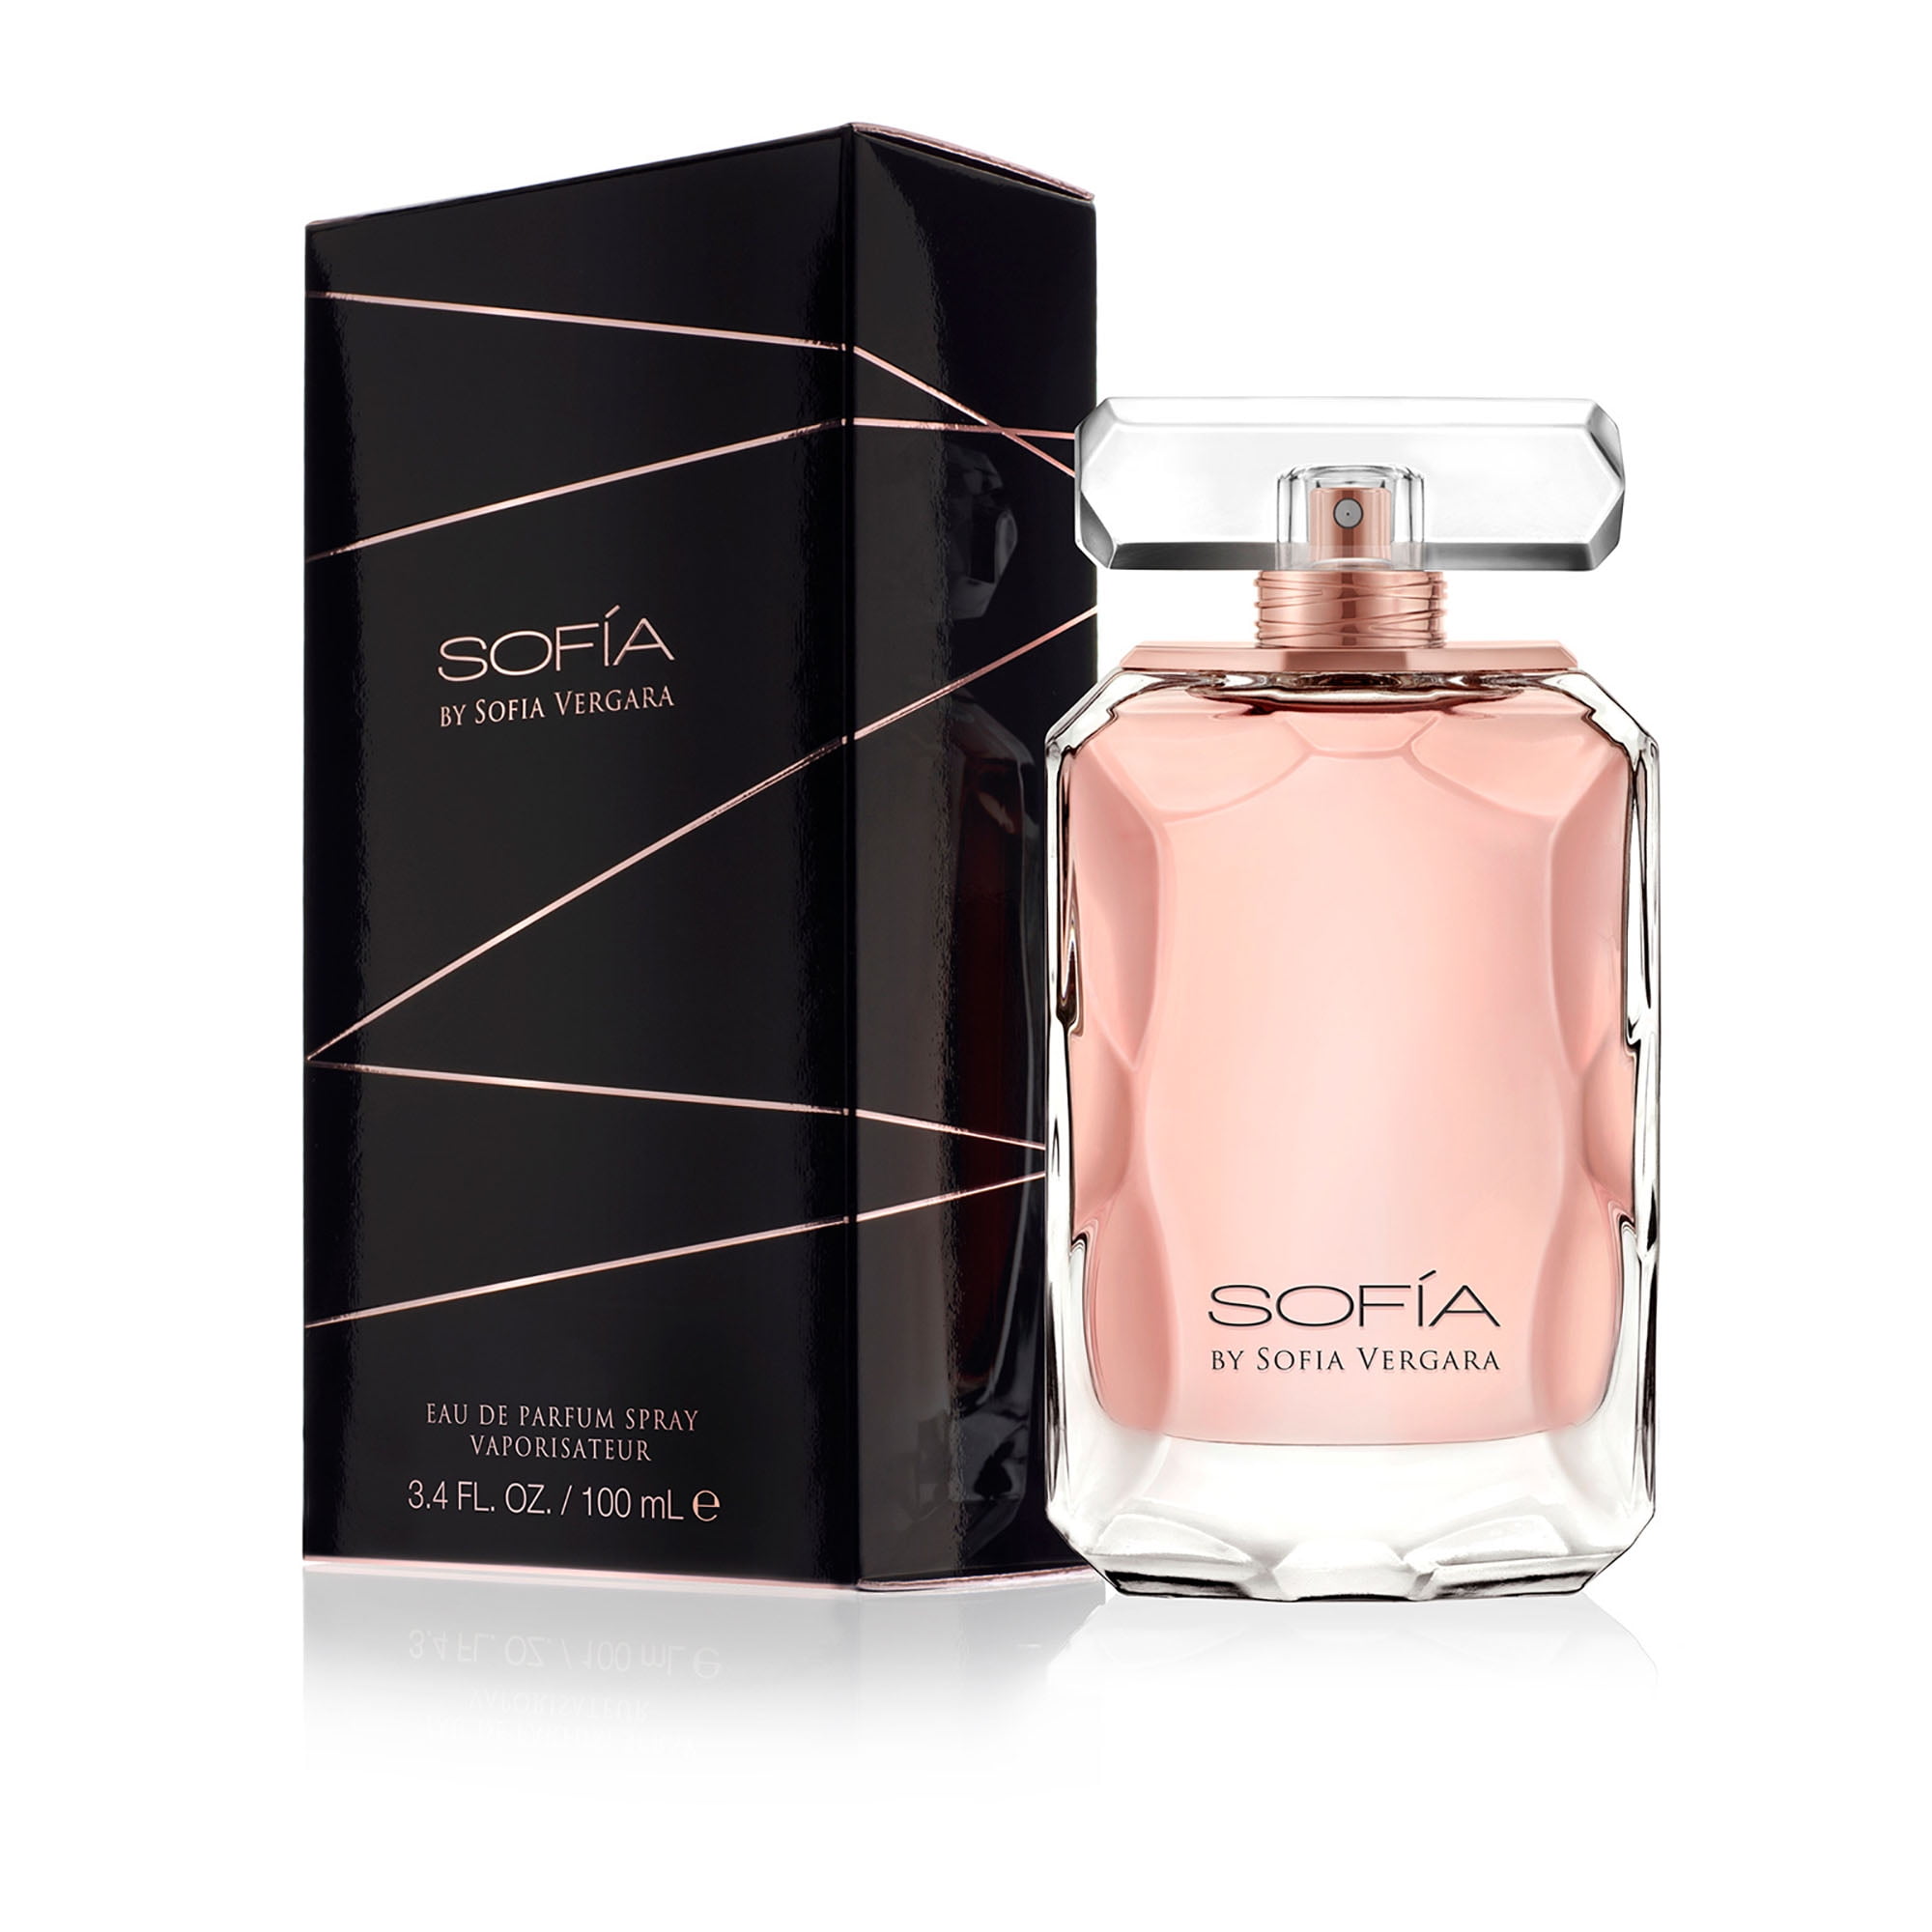 Sofia Vergara Eau De Parfum, Perfume for Women, 3.4 oz